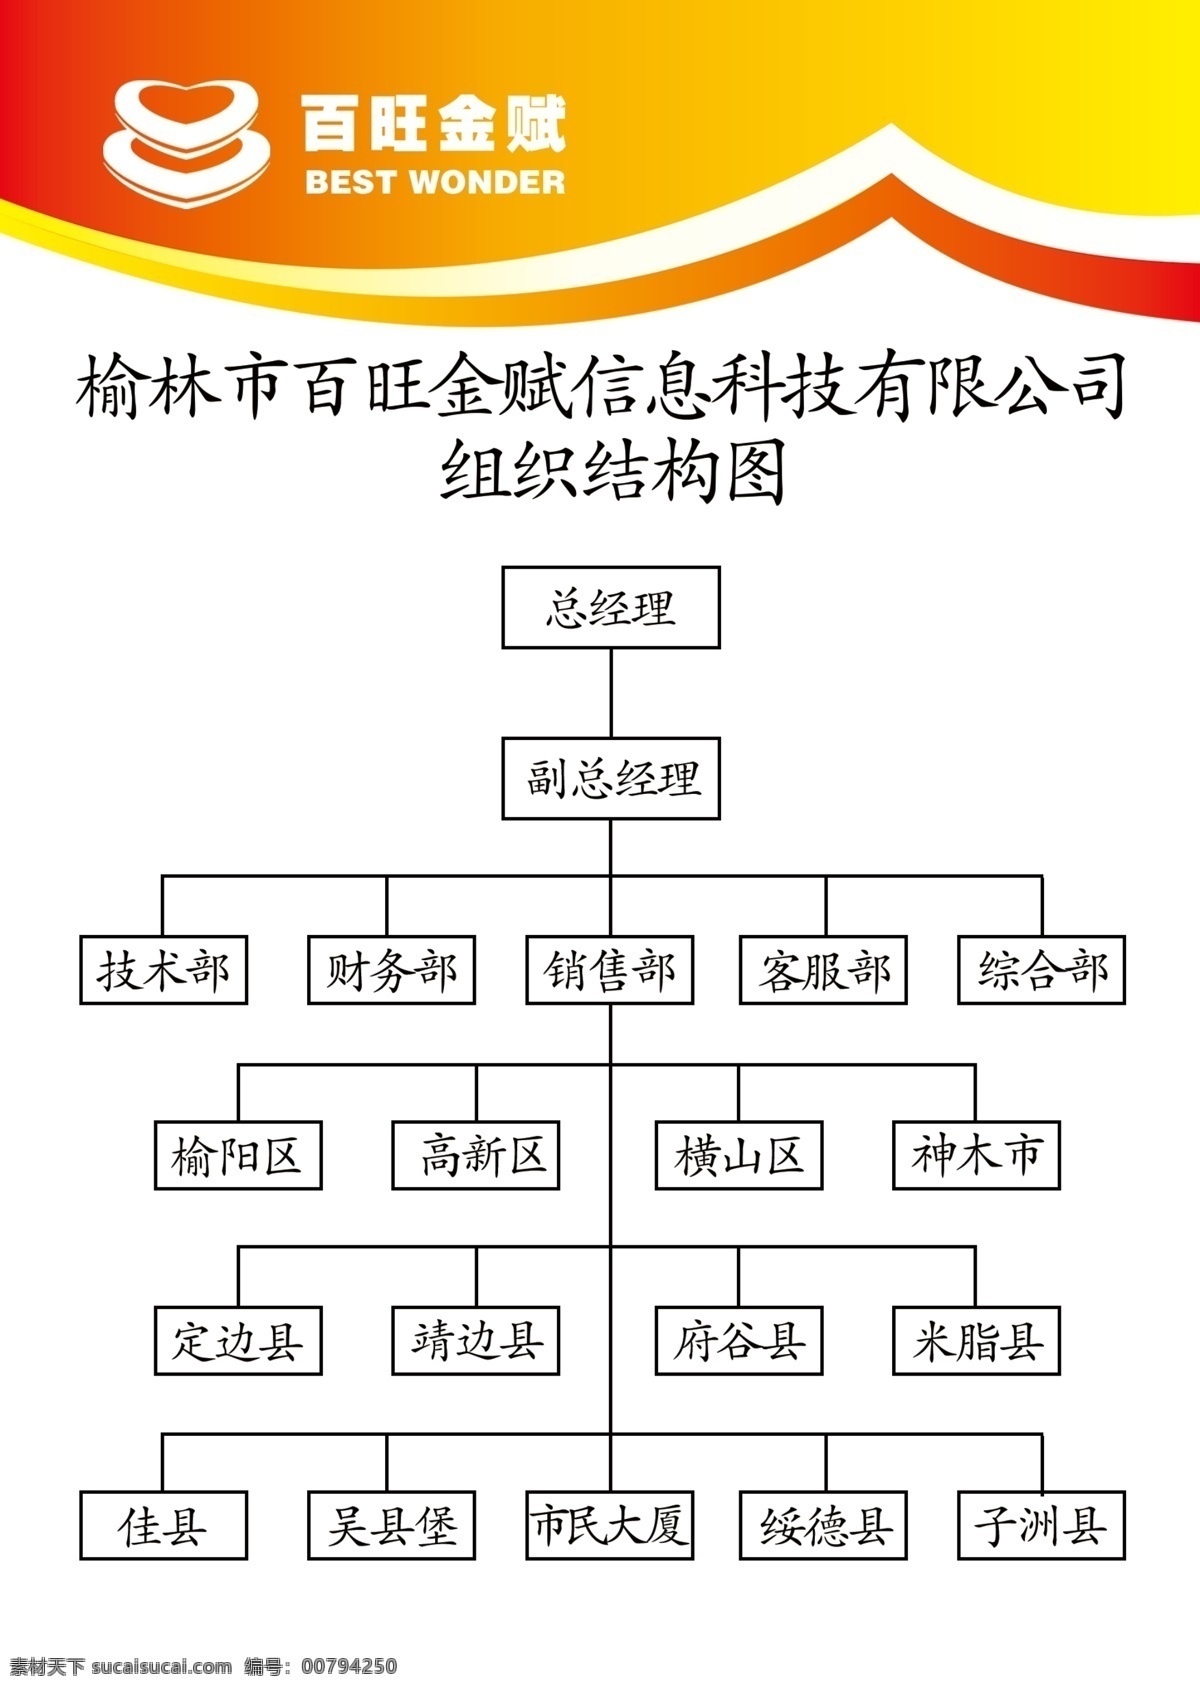 公司 组织机构 图 结构 榆林 百旺 画图 直线 框